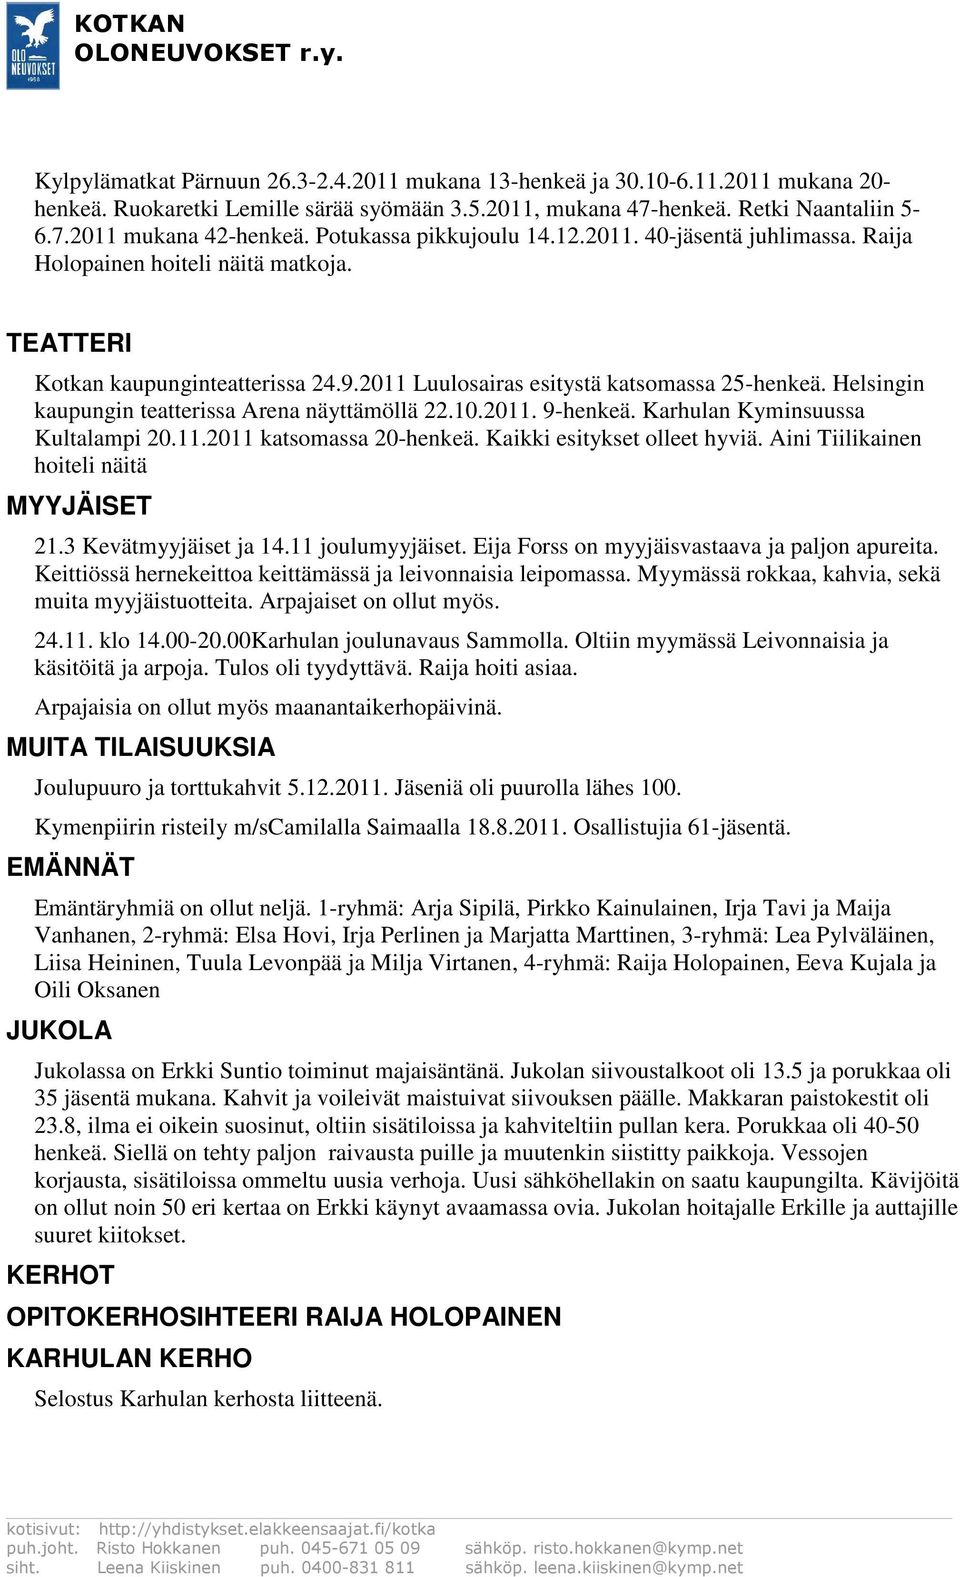 Helsingin kaupungin teatterissa Arena näyttämöllä 22.10.2011. 9-henkeä. Karhulan Kyminsuussa Kultalampi 20.11.2011 katsomassa 20-henkeä. Kaikki esitykset olleet hyviä.